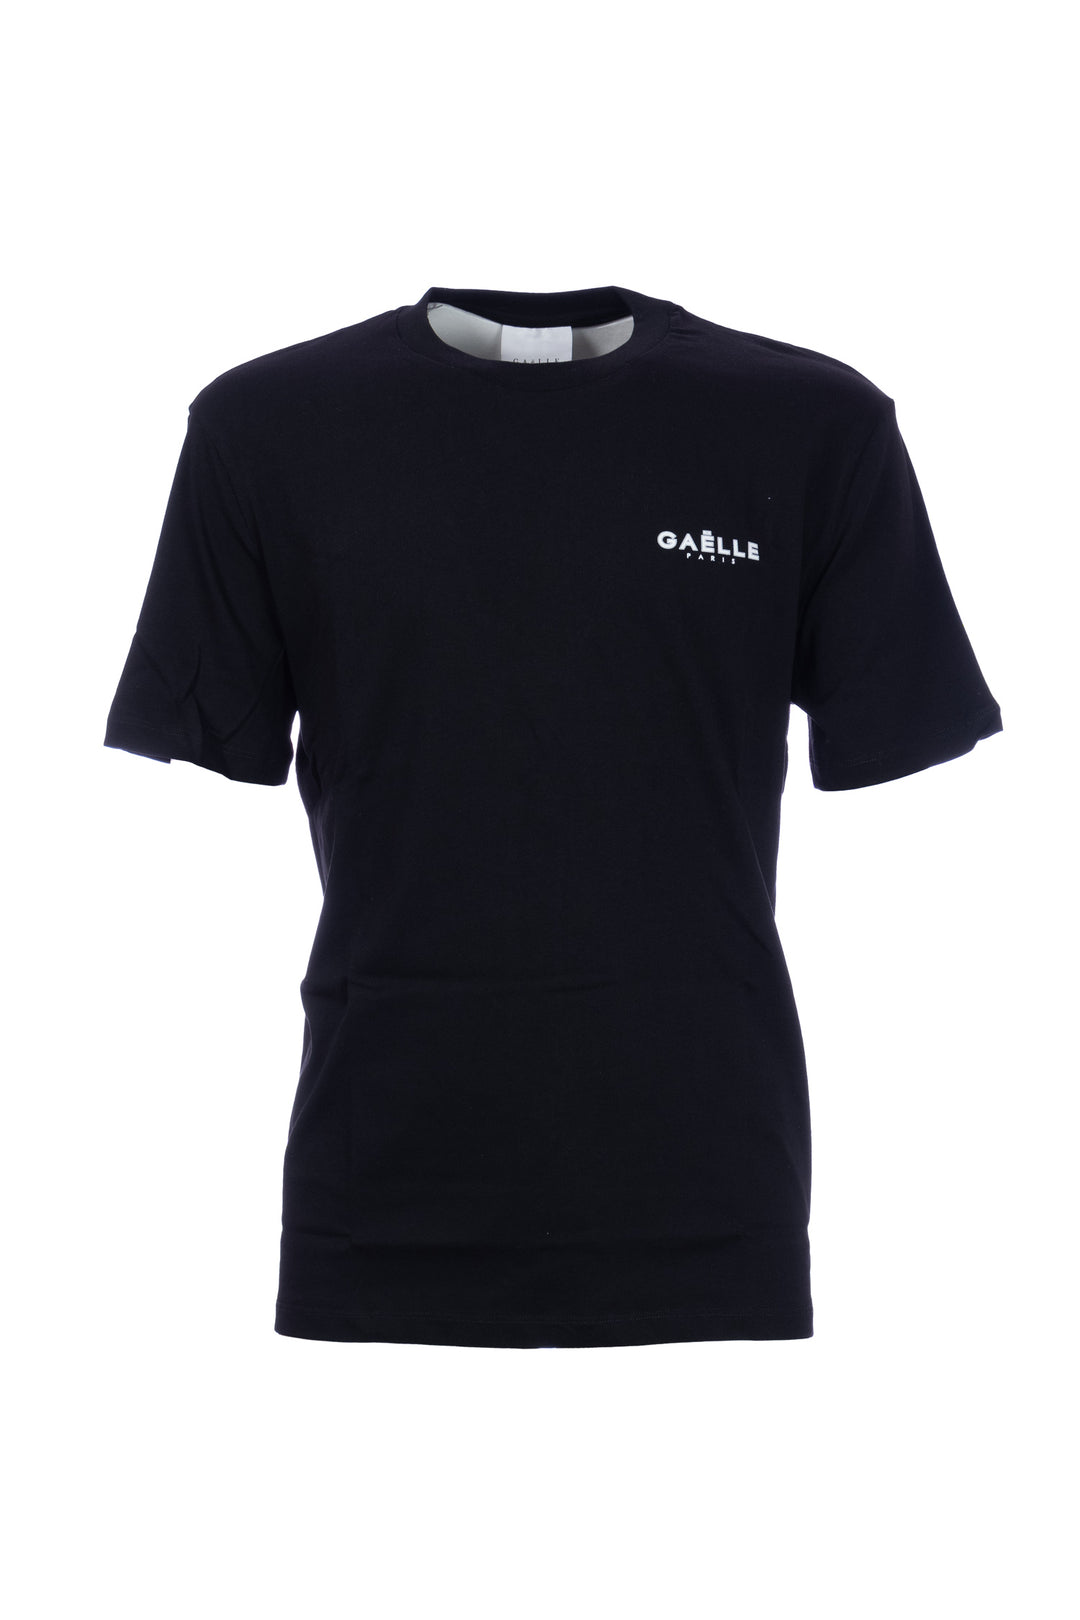 GAELLE T-shirt nera in cotone con logo stampato - Mancinelli 1954